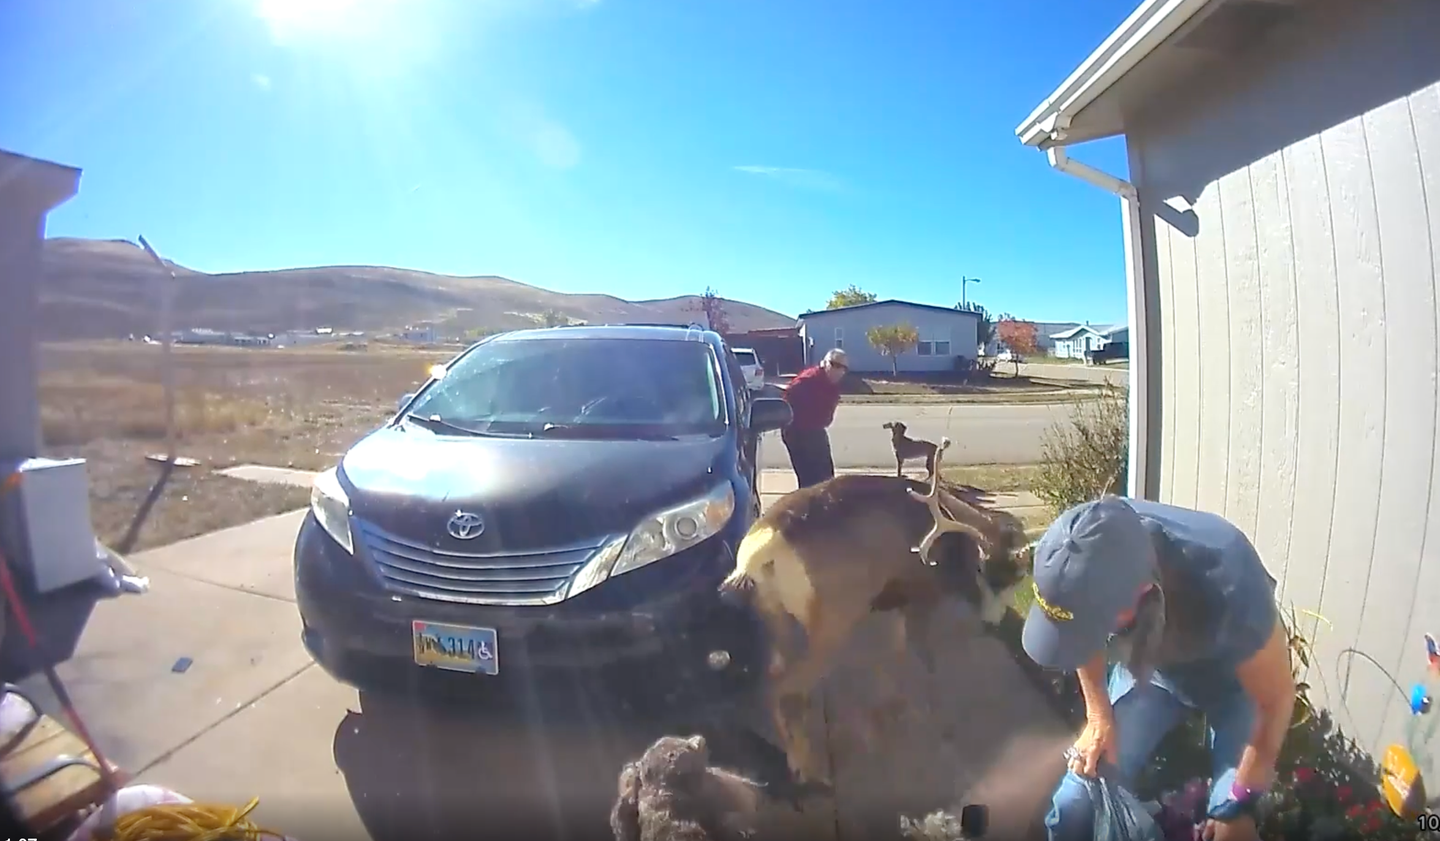 deer attacks woman in driveway